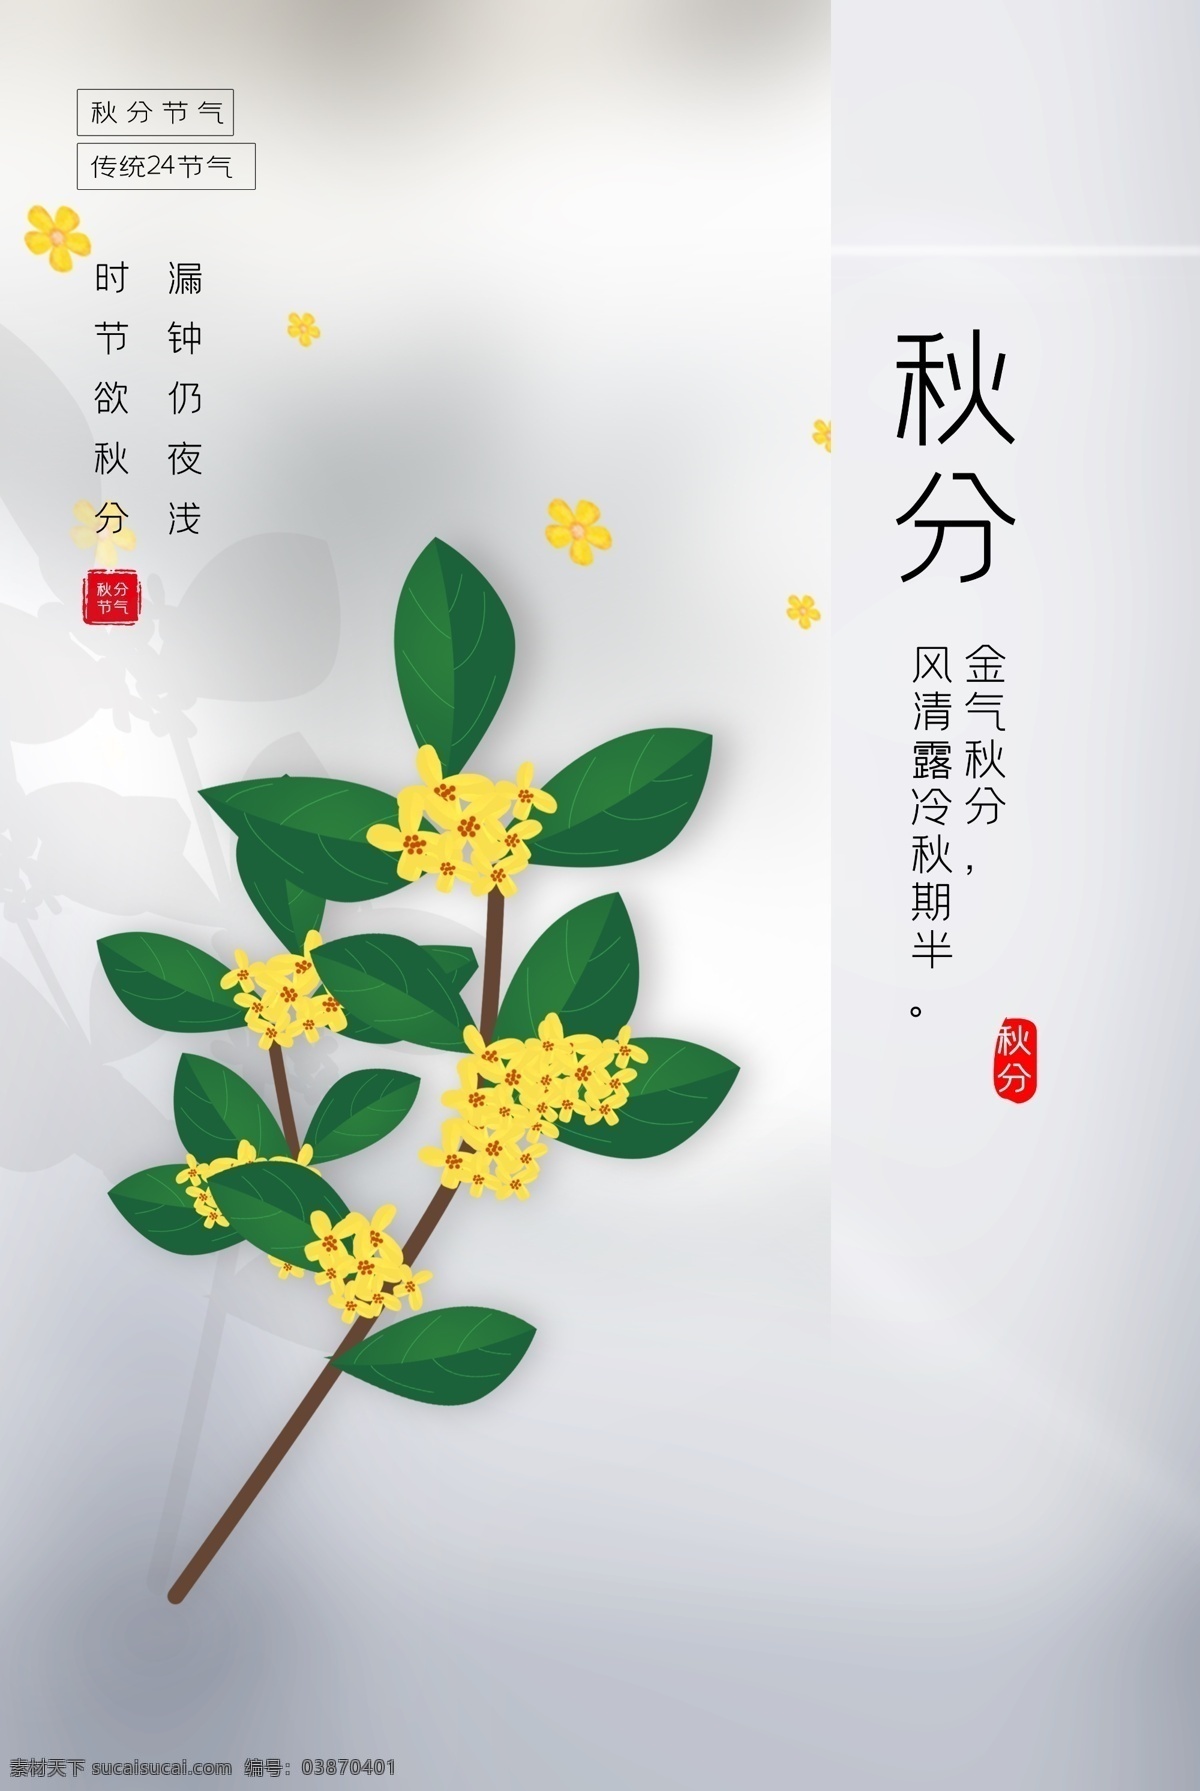 秋分 传统节日 活动 促销 海报 传统 节日 传统节日海报